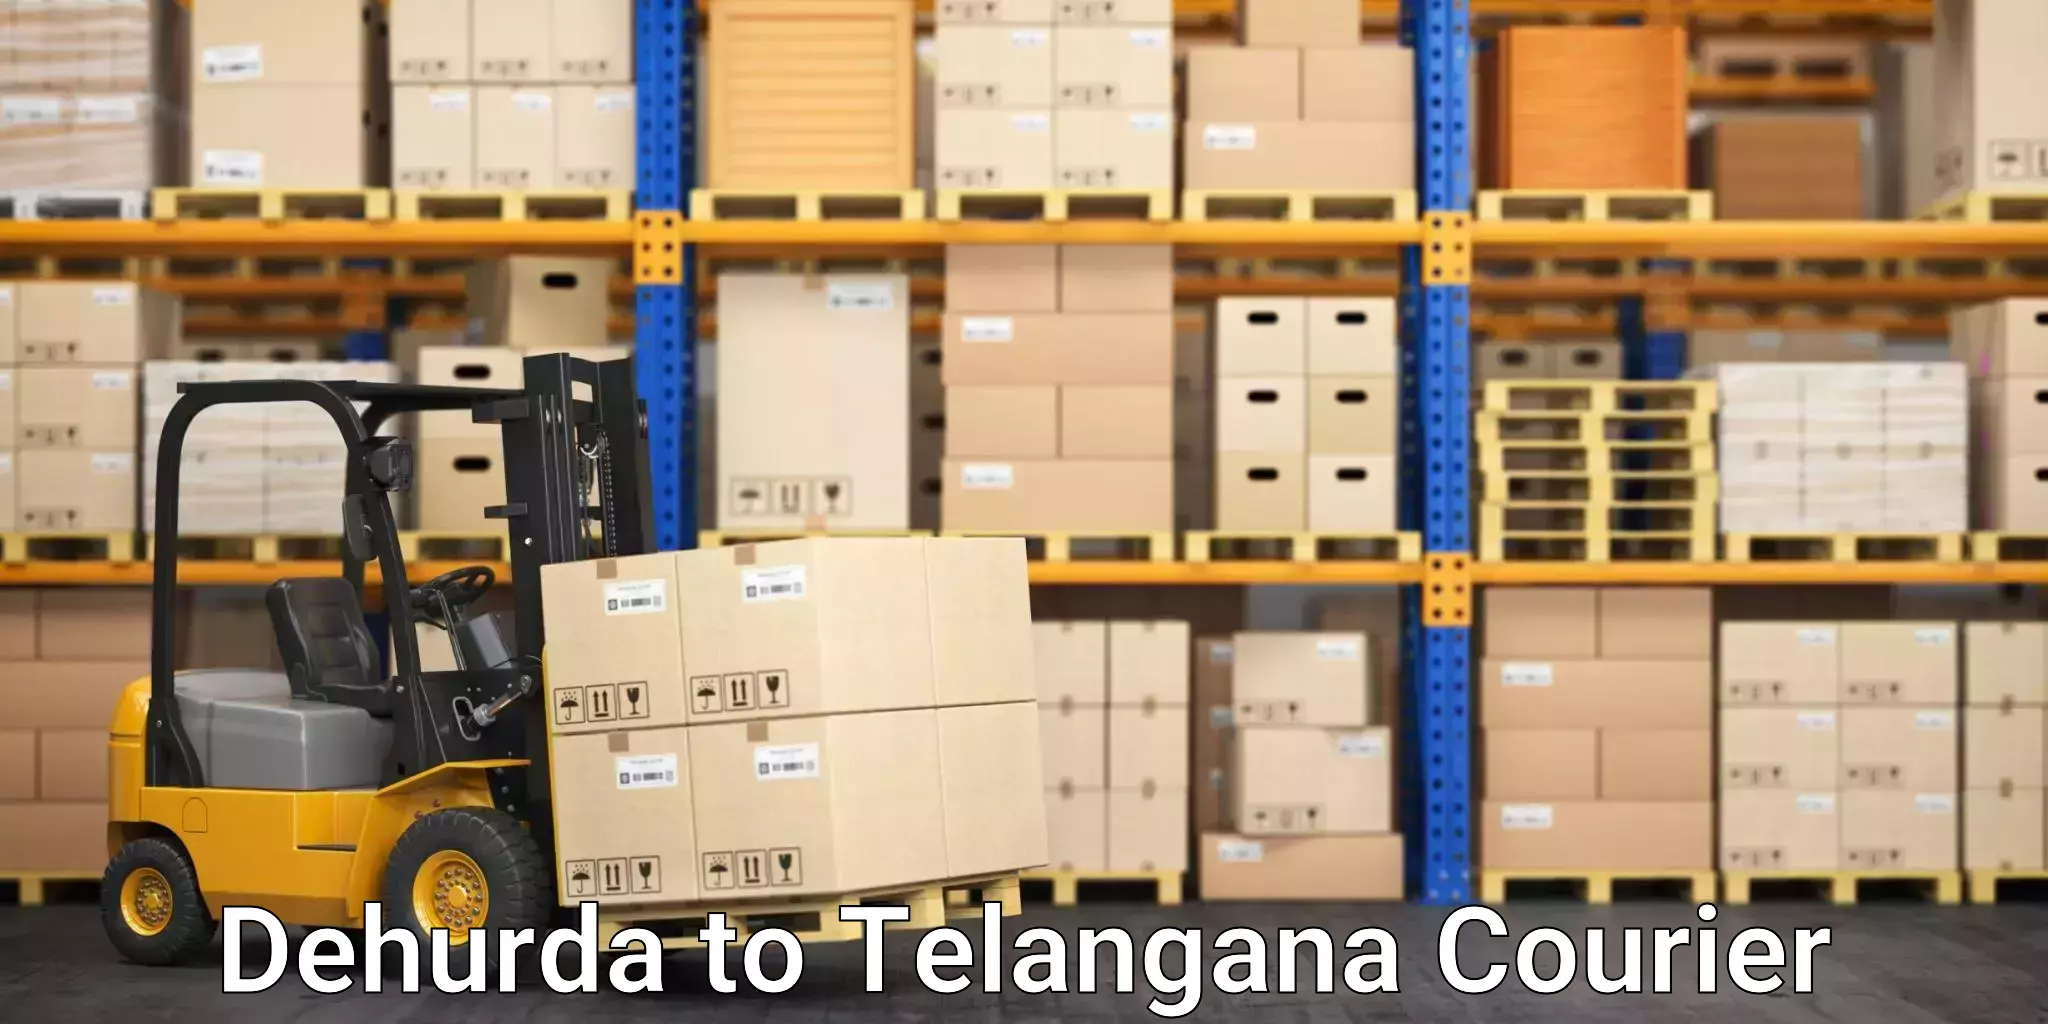 Retail shipping solutions Dehurda to Makthal